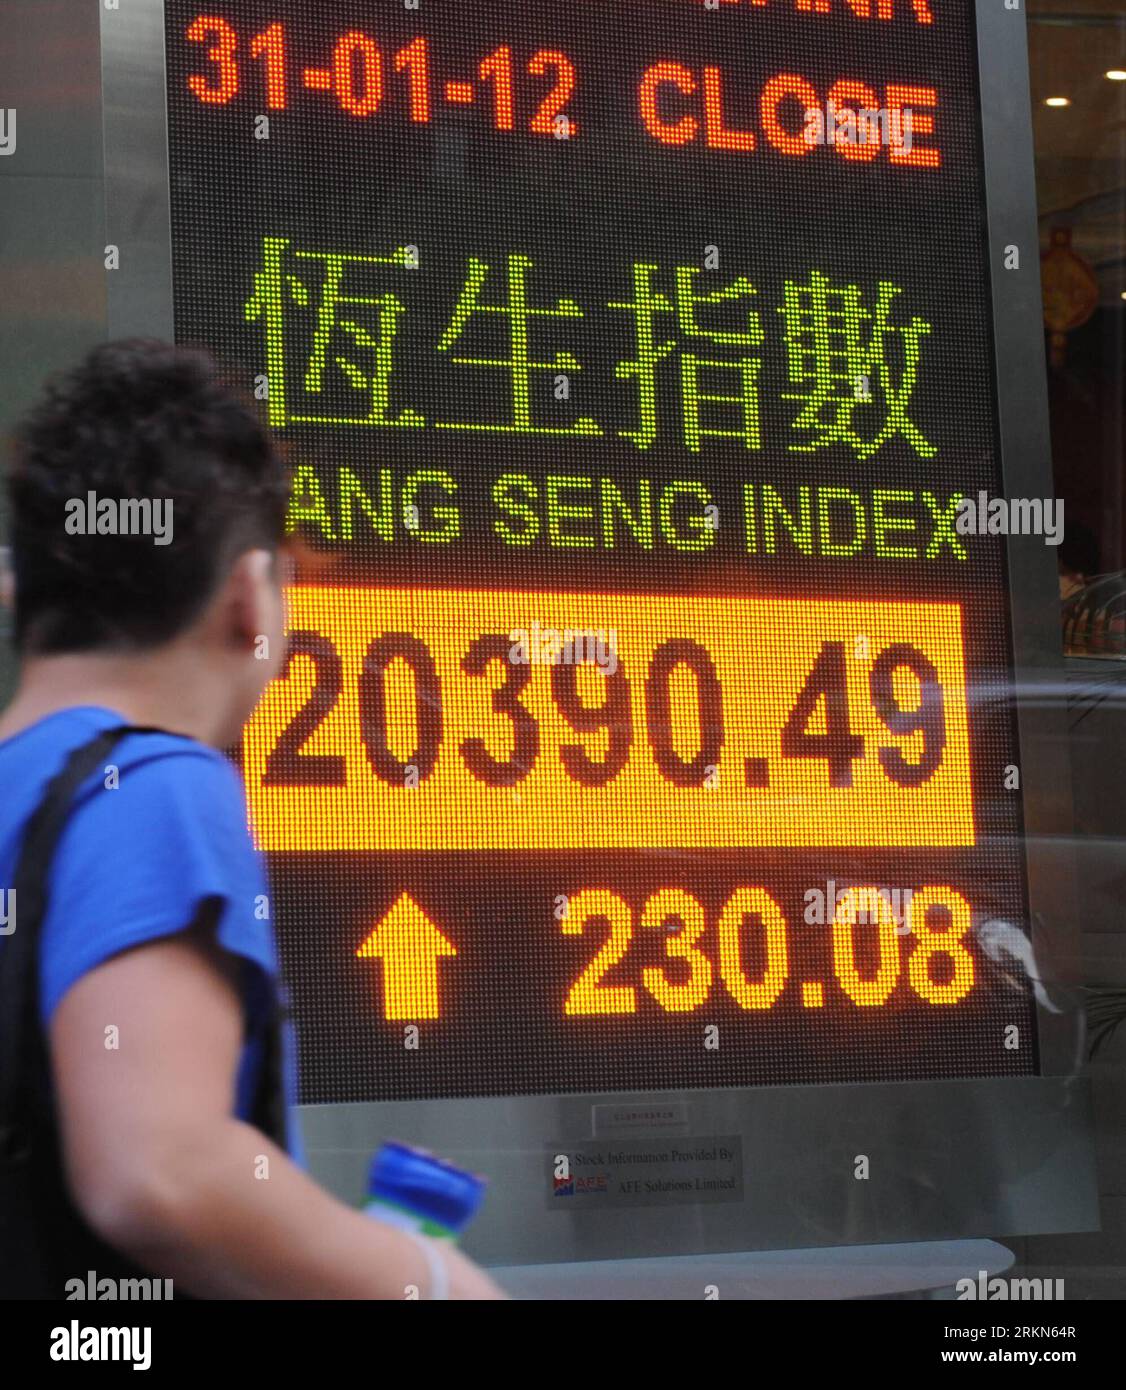 Bildnummer: 56994200  Datum: 31.01.2012  Copyright: imago/Xinhua (120131) -- HONG KONG, Jan. 31, 2012 (Xinhua) -- A pedestrian walks past an electronic panel showing the Hang Seng Index in Hong Kong, south China, Jan. 31, 2012. Hong Kong s Hang Seng Index increased by 230.08 points, or 1.14 percent, to end at 20390.49 on Tuesday. (Xinhua/Wong Pun Keung) CHINA-HONG KONG-STOCK-UP PUBLICATIONxNOTxINxCHN Wirtschaft Börse Aktienindex Aktienkurs Aktien Anstieg xbs x0x 2012 quadrat      56994200 Date 31 01 2012 Copyright Imago XINHUA  Hong Kong Jan 31 2012 XINHUA a Pedestrian Walks Past to Electronic Stock Photo